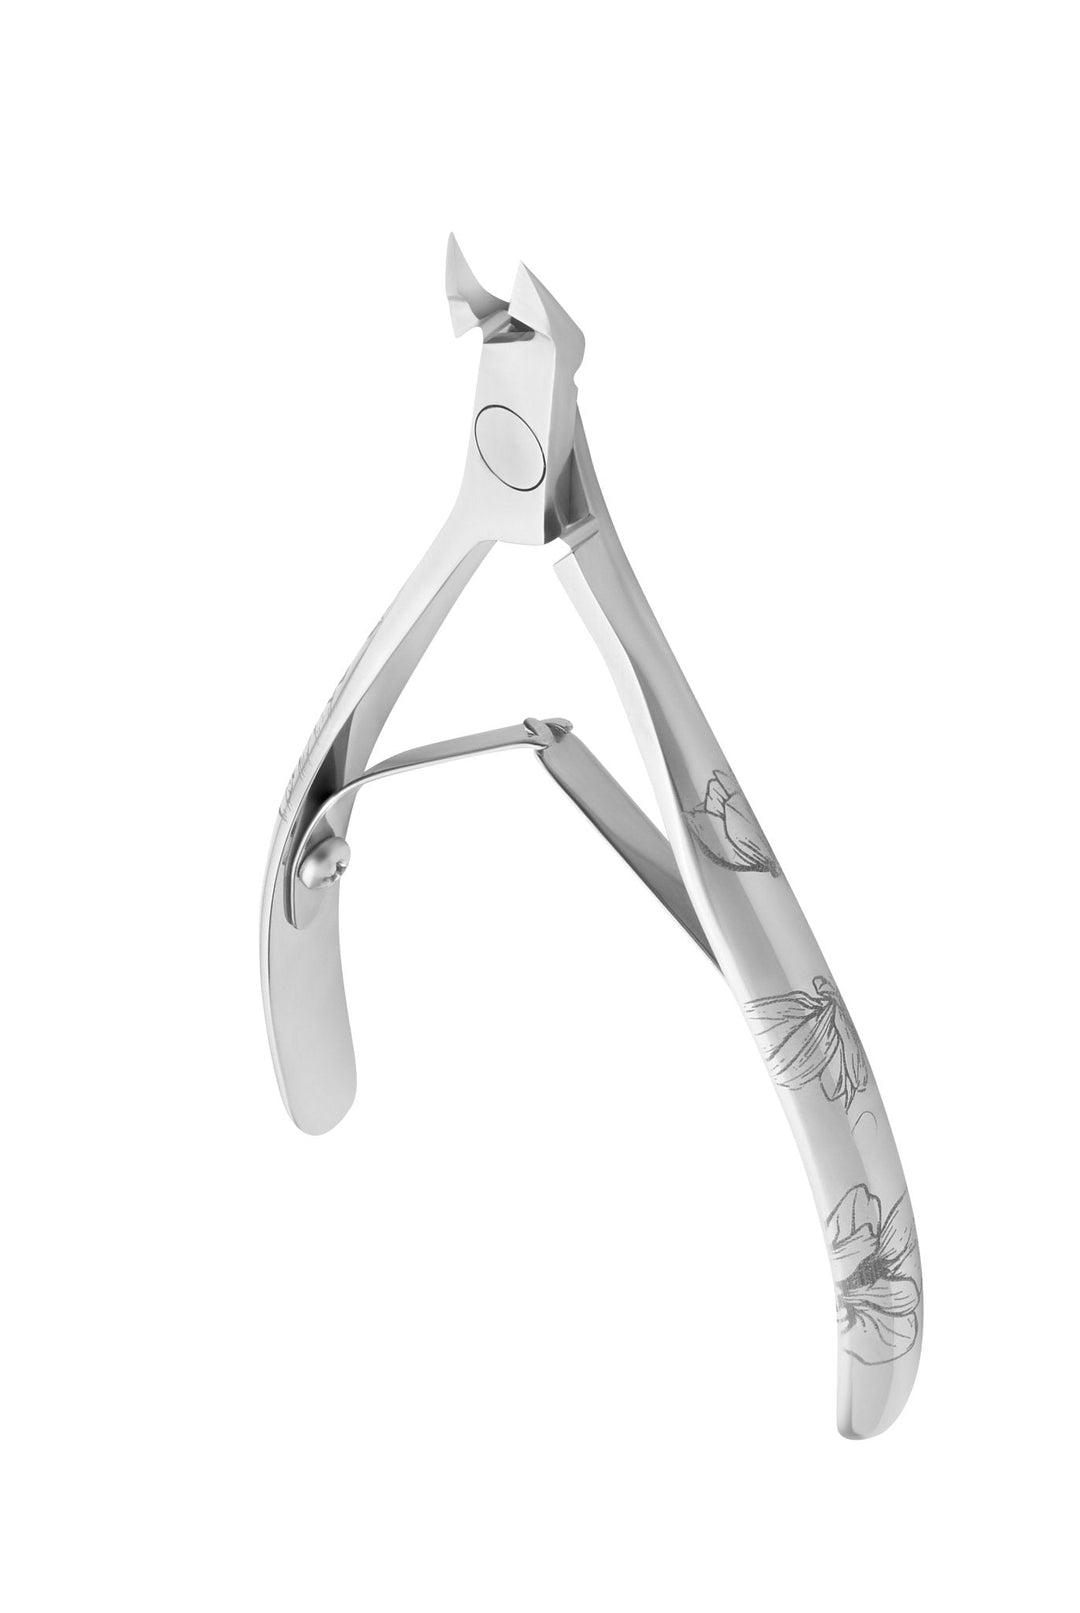 Staleks Cuticle Nipper Exclusive 20 - 5 mm jaw | U-tools